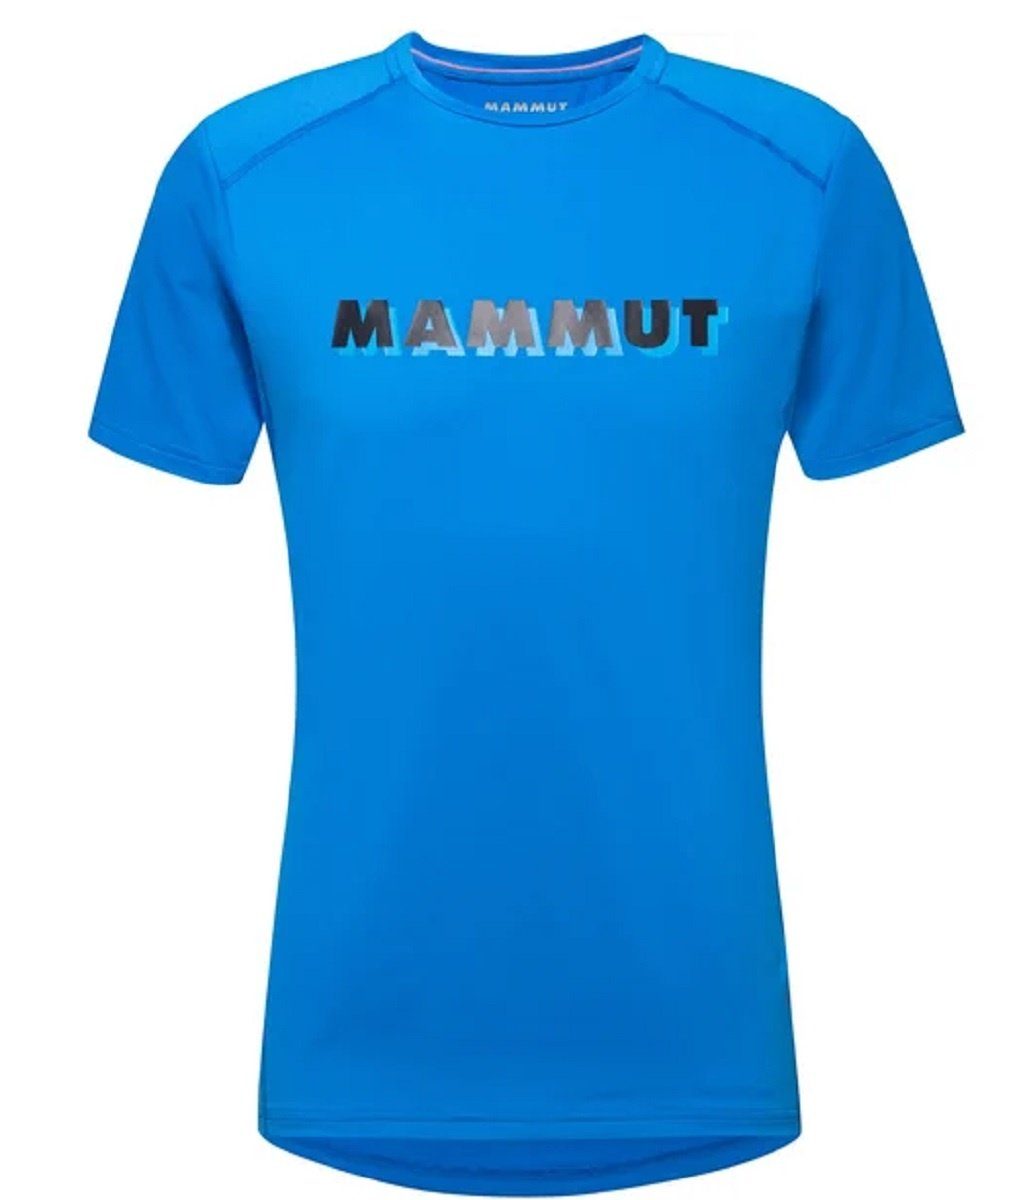 Mammut Funktionsshirt Mammut Splide Logo T-Shirt Herren Funktionsshirt Wandershirt